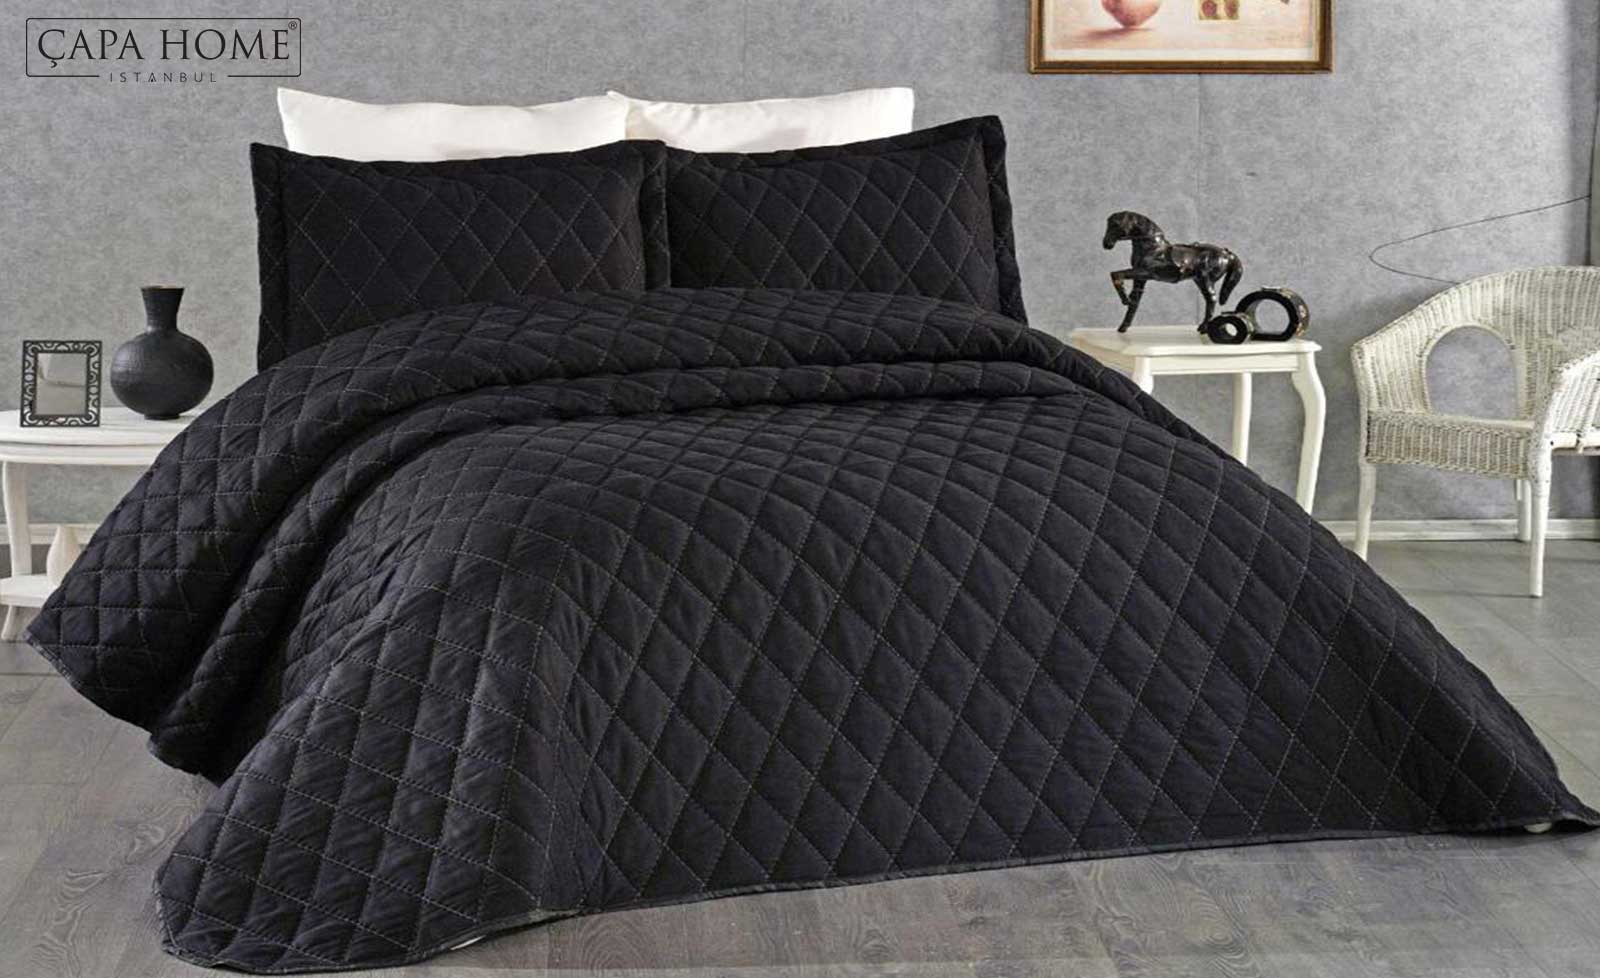 Nare Siyah Kapitone Nakışlı Yatak Örtüsü Çapa Home Ev Tekstili